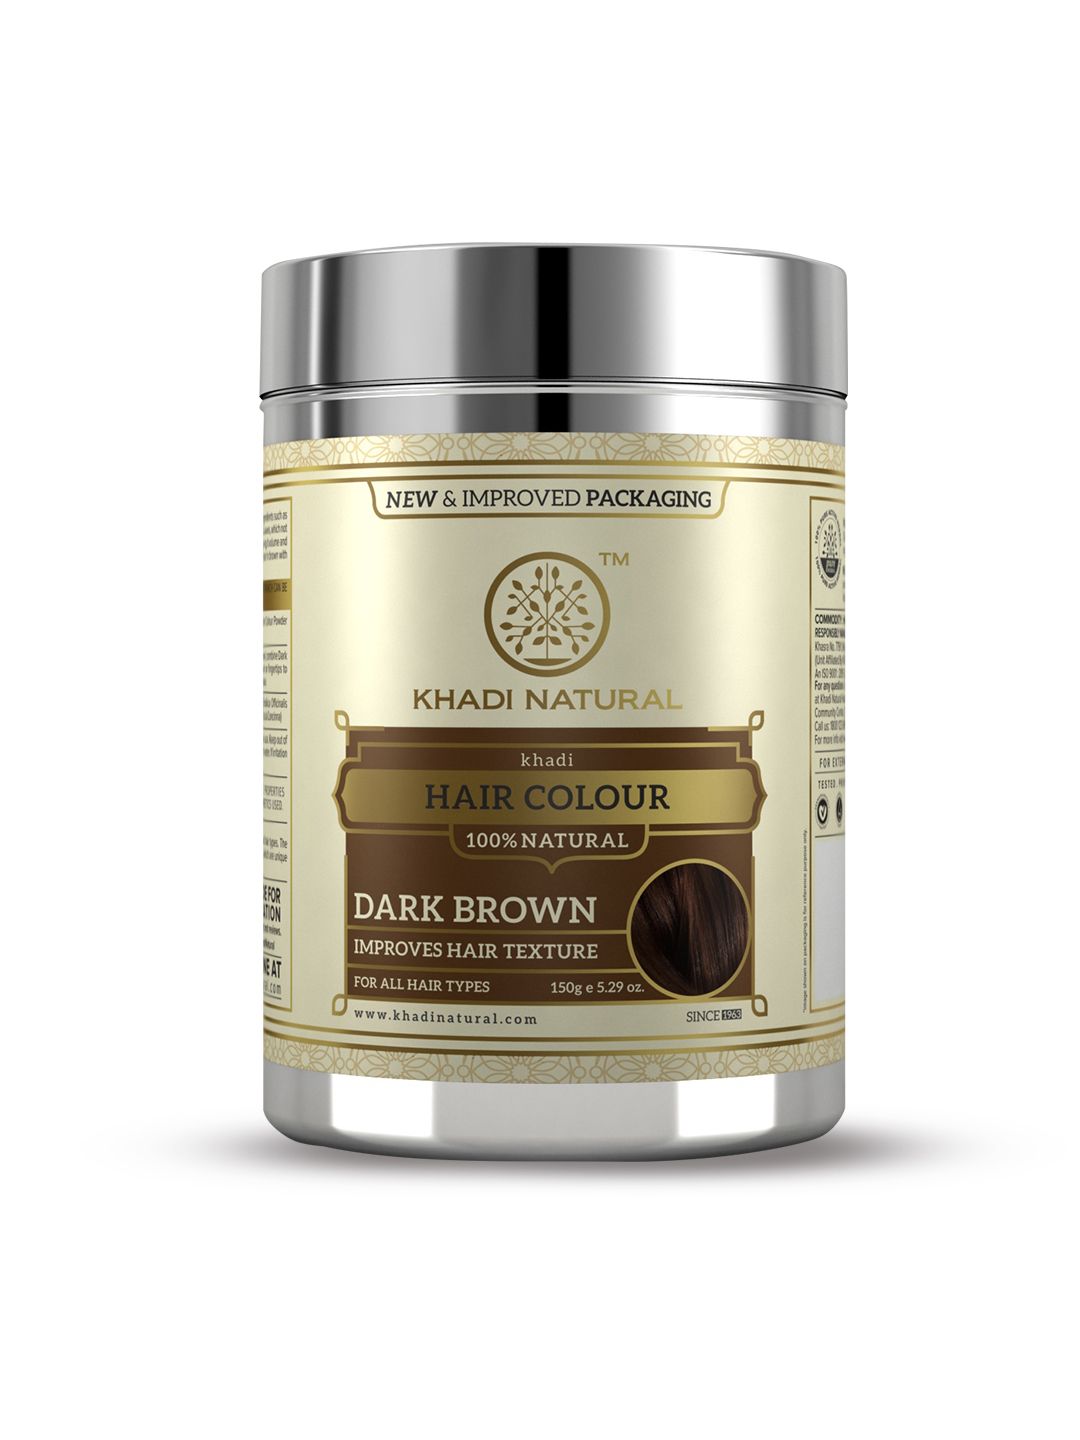 Khadi Natural Herbal Hair Colour - Dark Brown 150 g Price in India